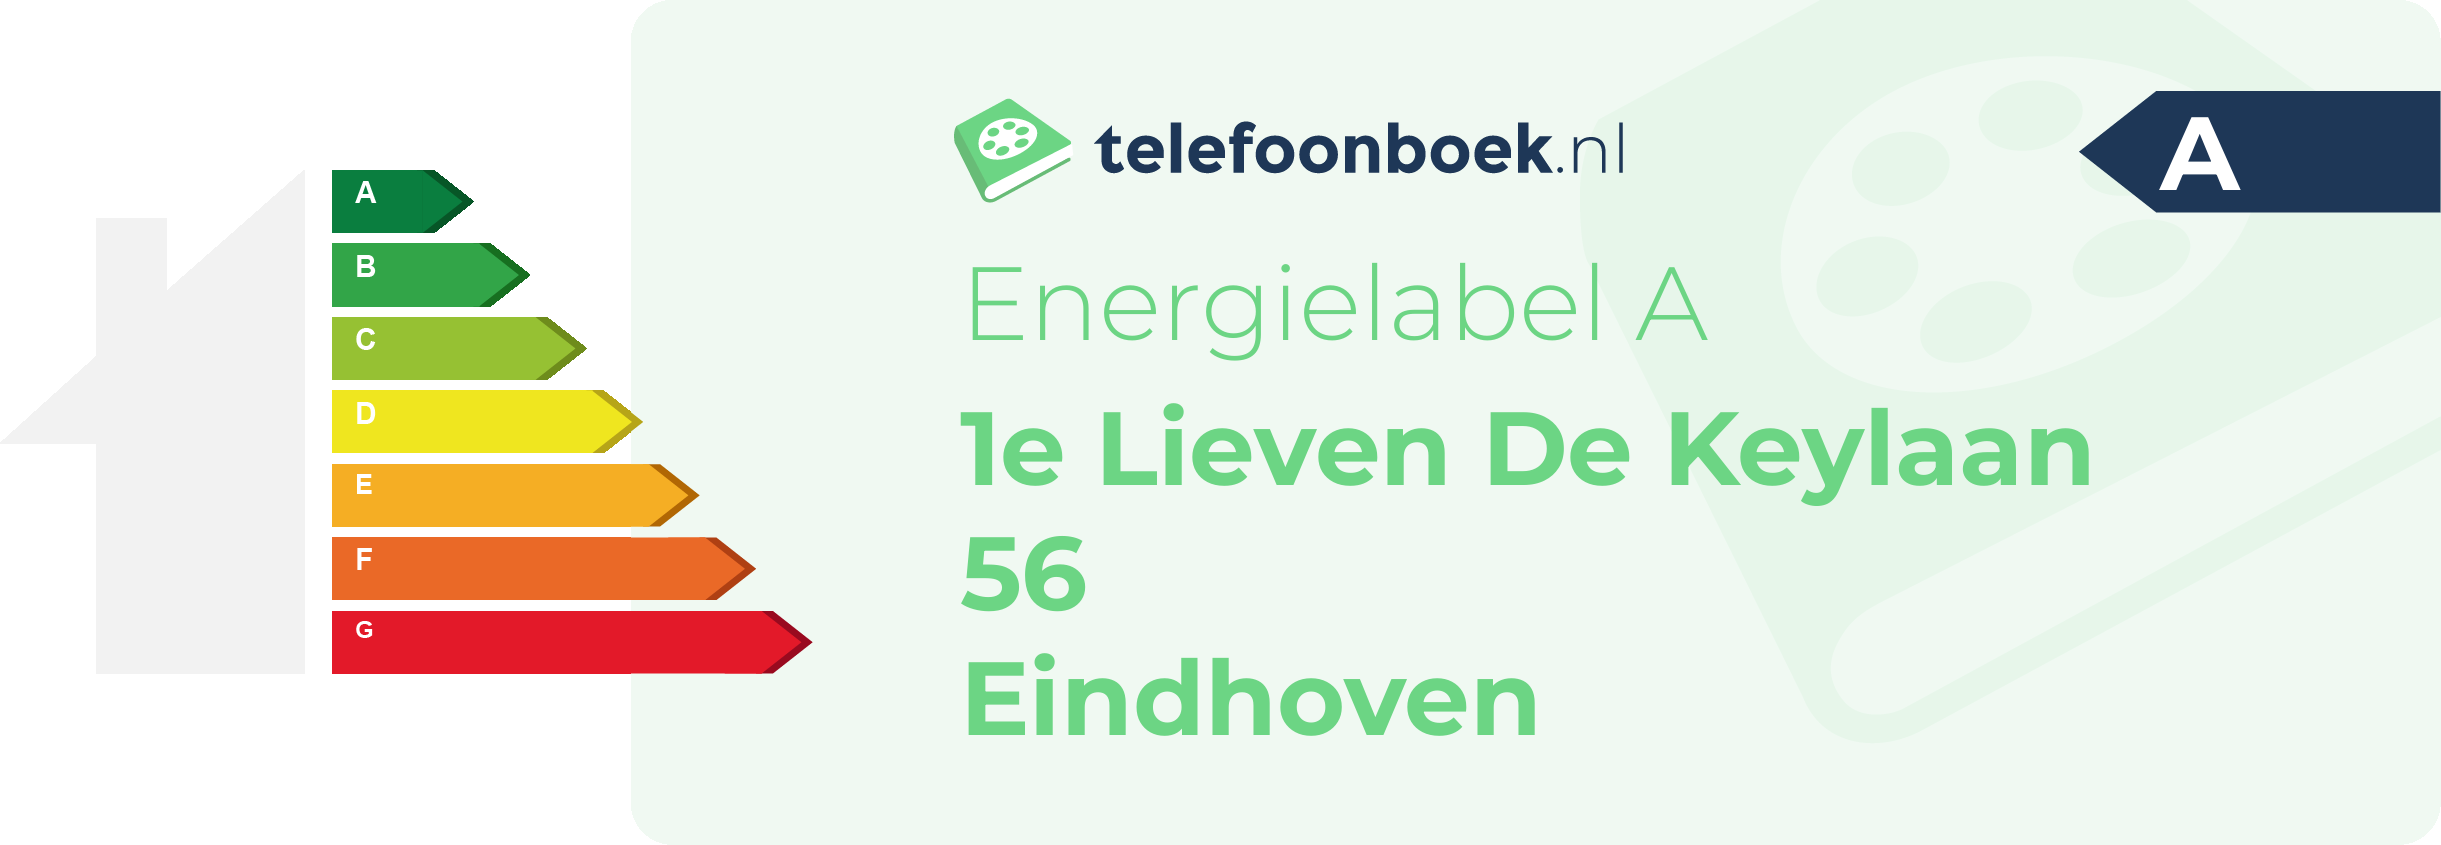 Energielabel 1e Lieven De Keylaan 56 Eindhoven